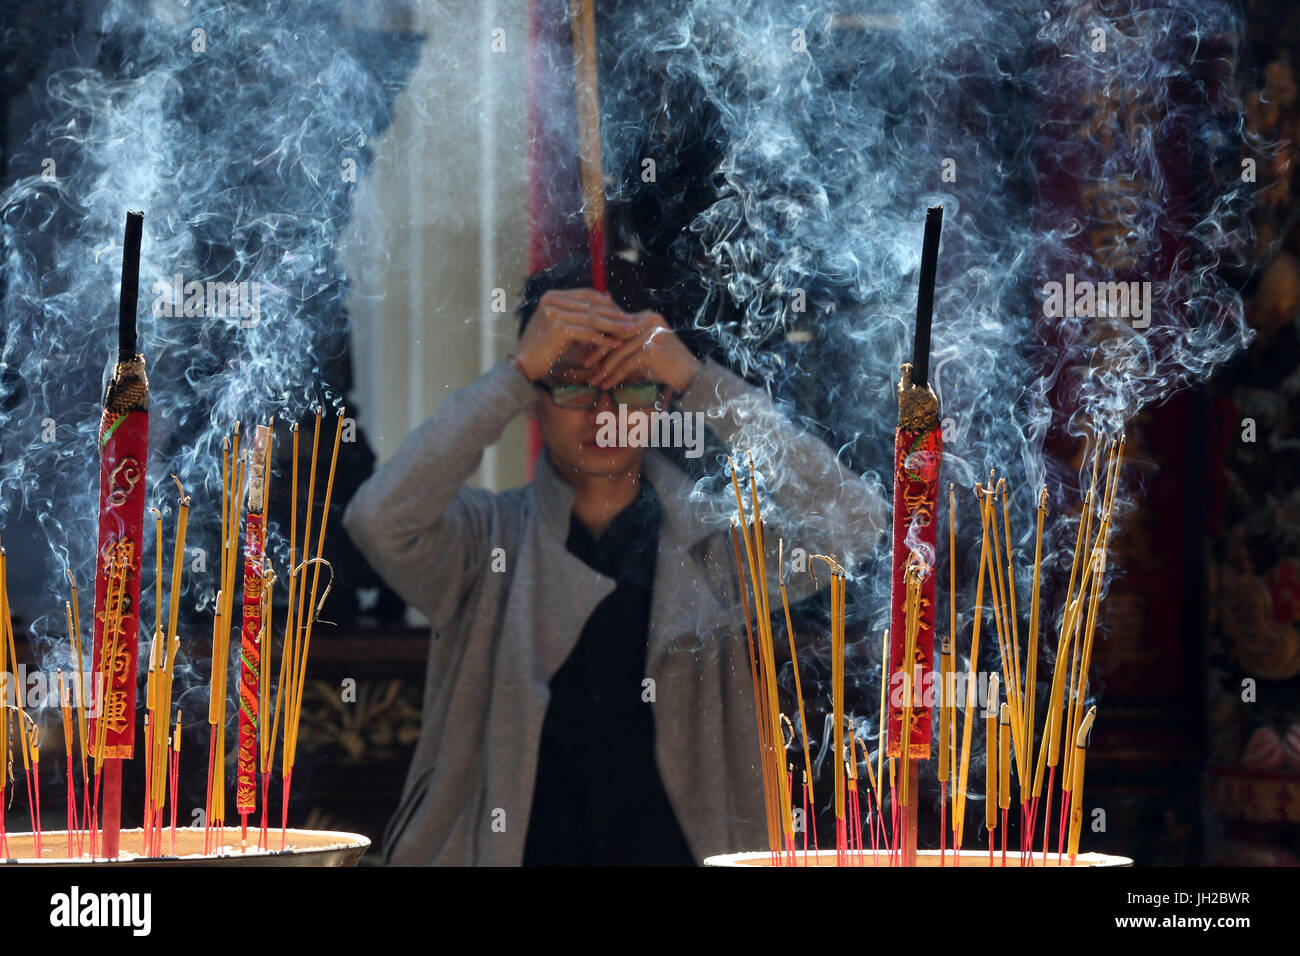 Der taoistische Tempel. Phuoc eine Hoi Quan Pagode. Räucherstäbchen  Räucherstäbchen Topf brennen und Rauchen Verwendung für Zahlen Respekt zum  Buddha. Buddhistische Anbeter Stockfotografie - Alamy